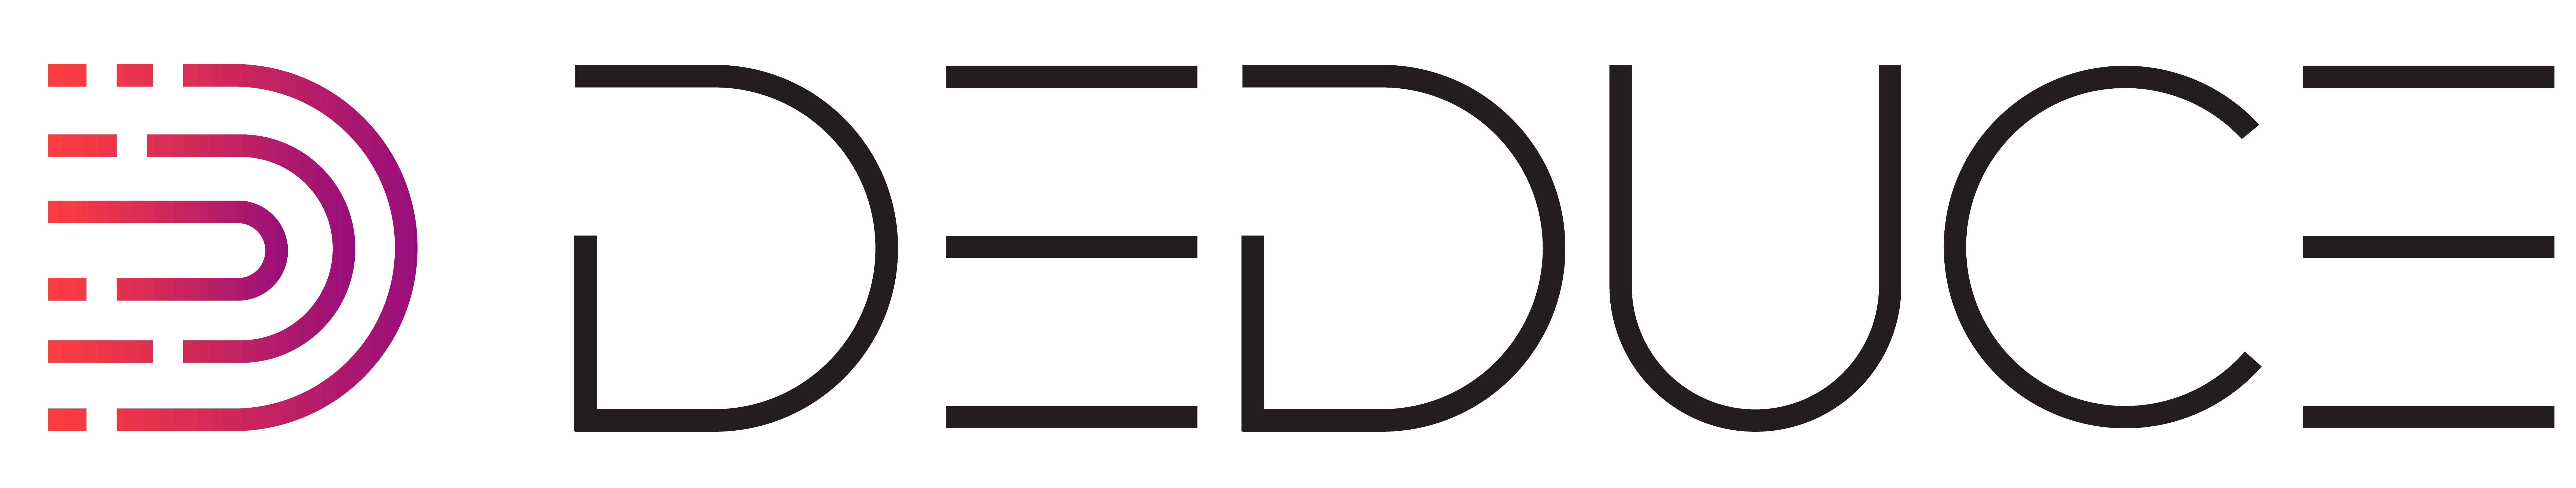 Deduce logo